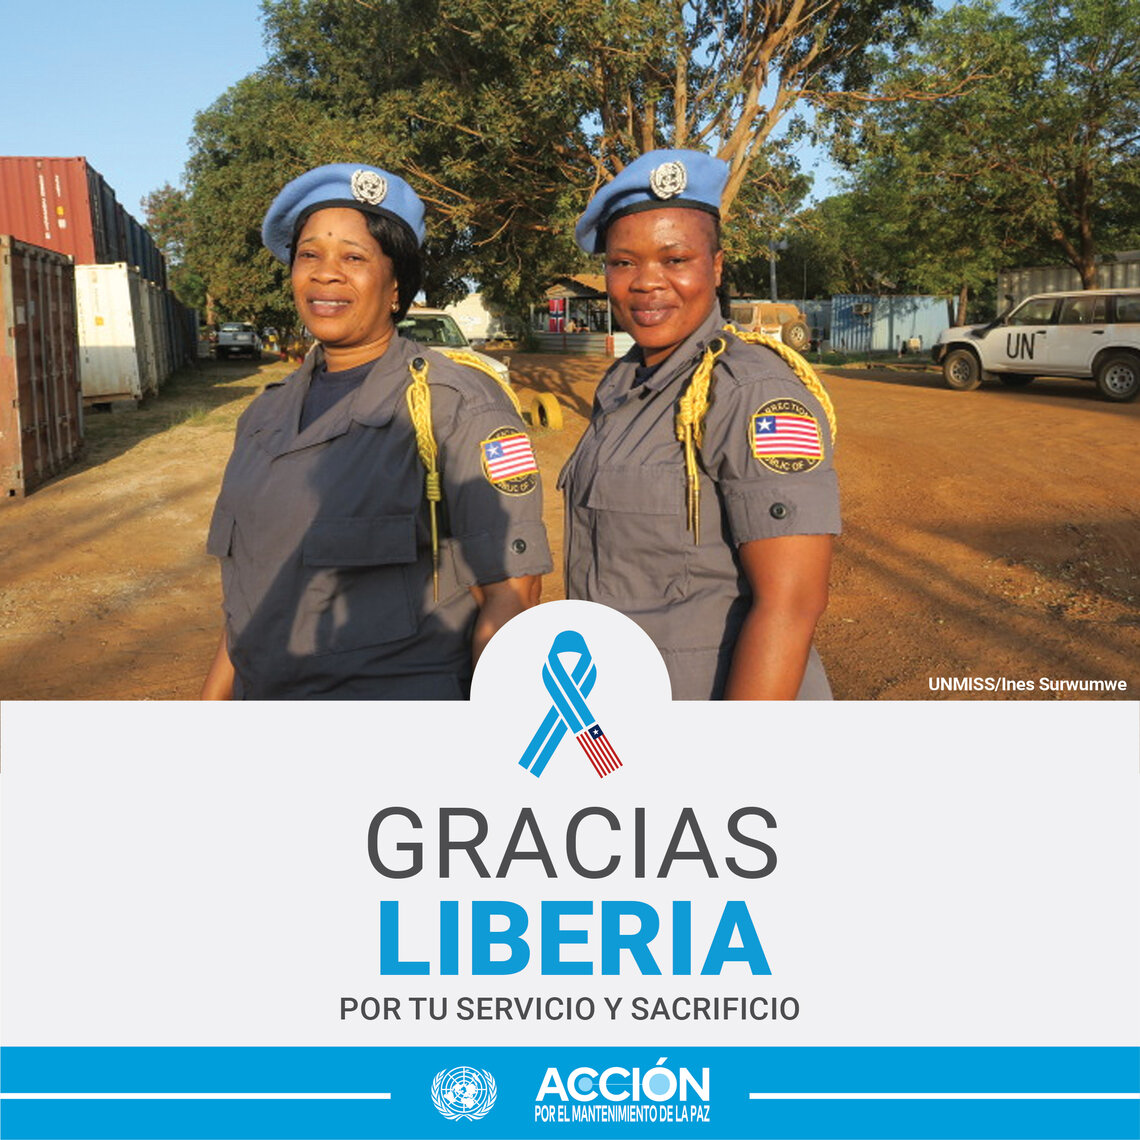 Dos mujeres cascos azules de Liberia posando para una foto. Al fondo a la derecha hay una coche de las Naciones Unidas. 